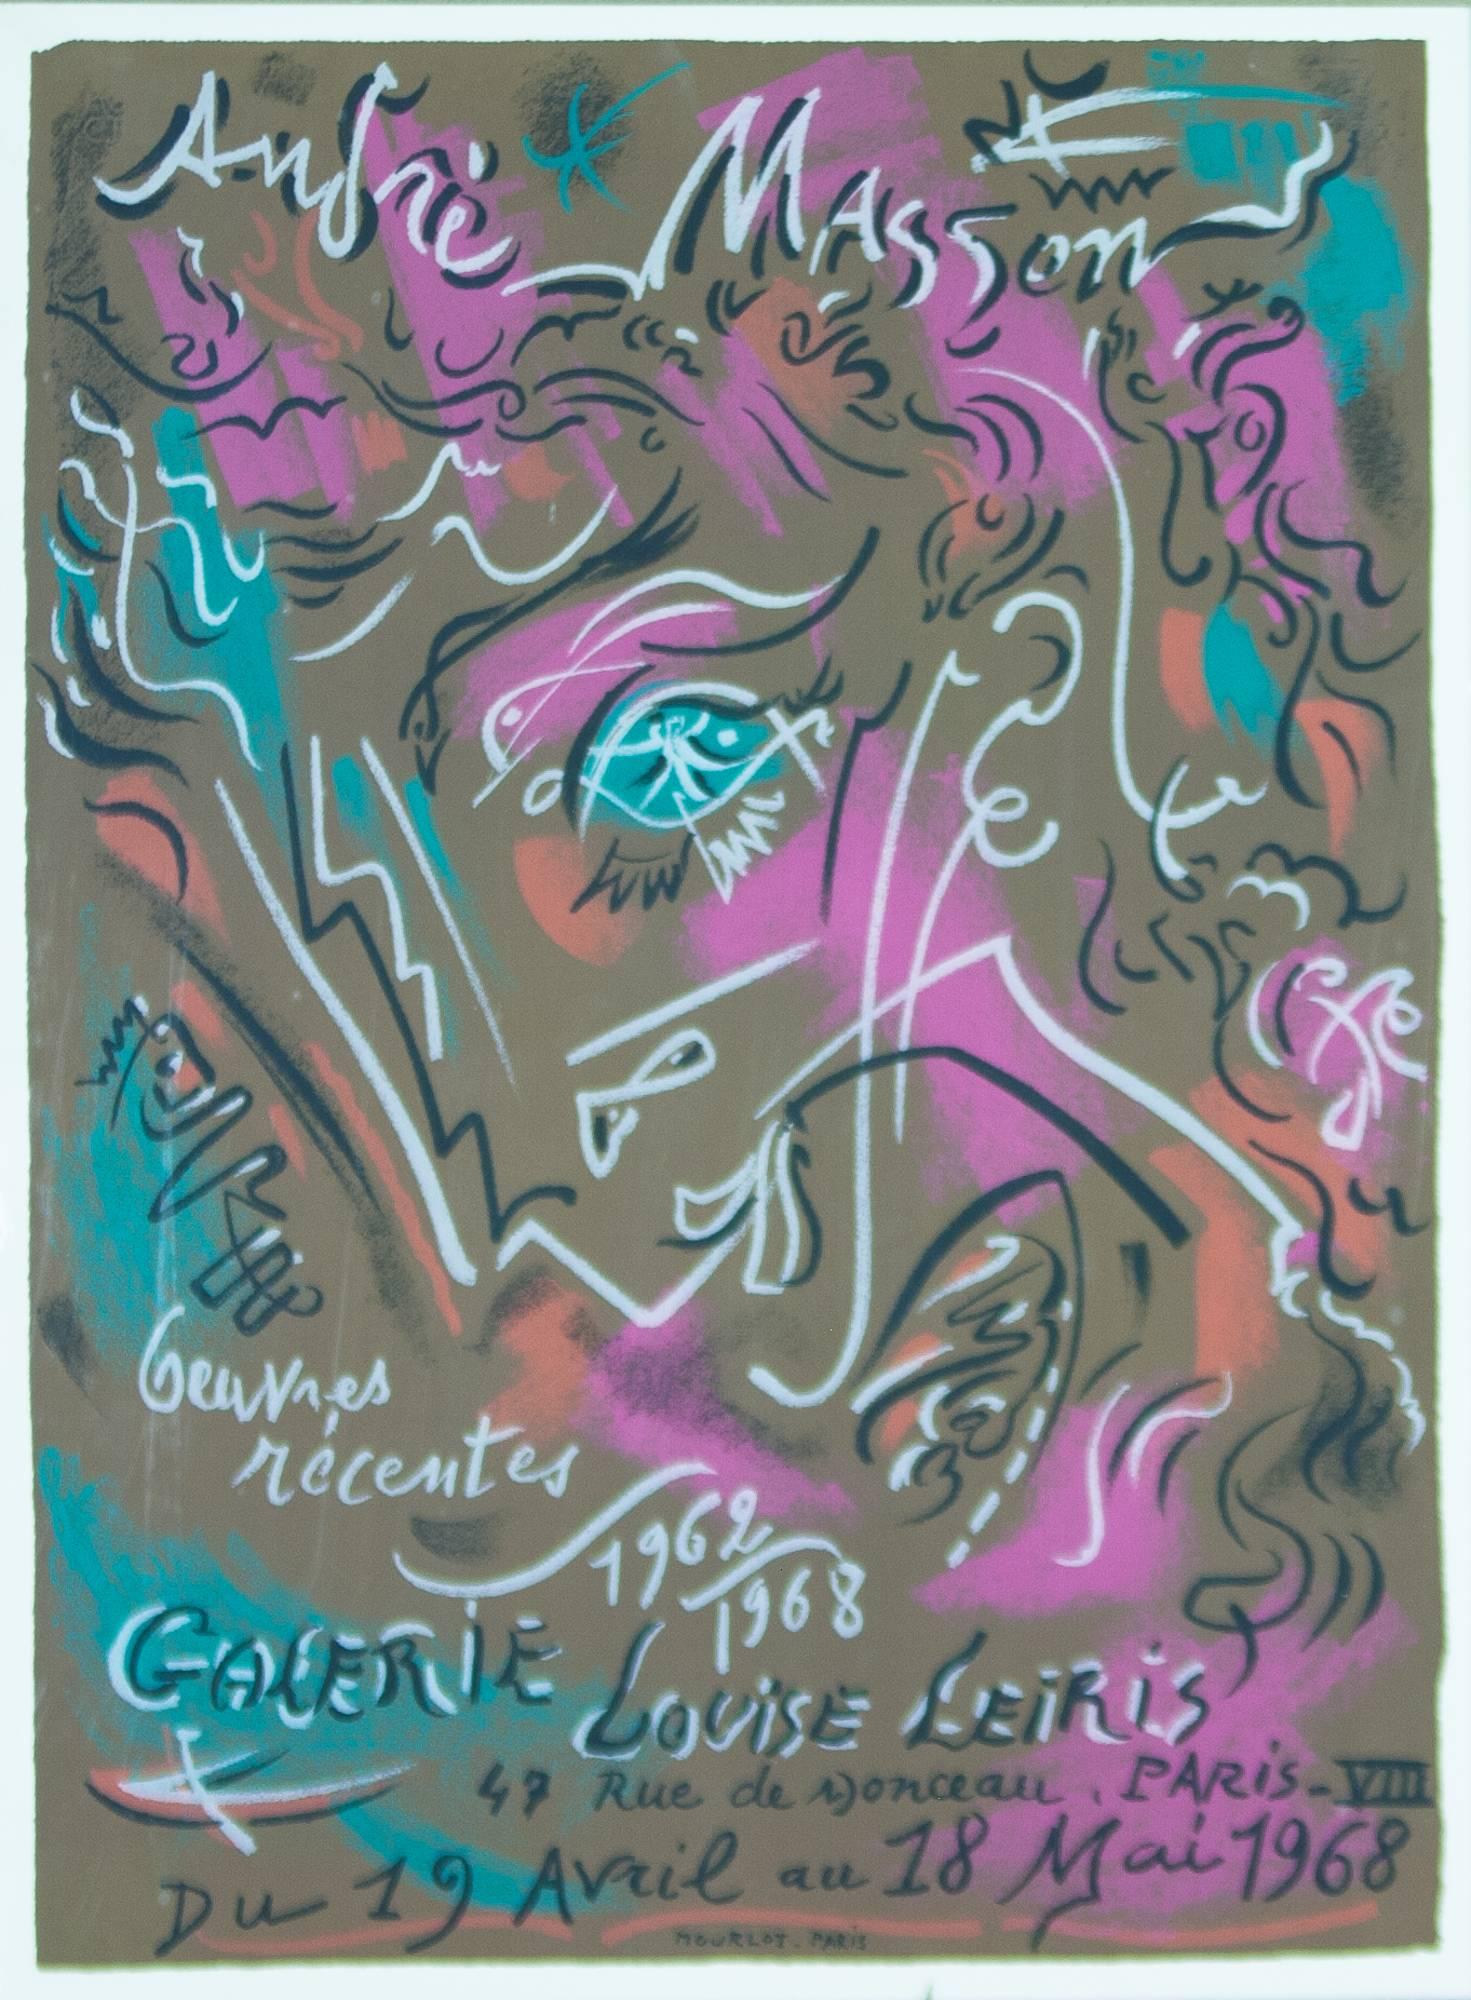 Abstract Print André Masson - Andre Masson Exposition de ses œuvres récentes 1962-1968 à la Galerie Louise